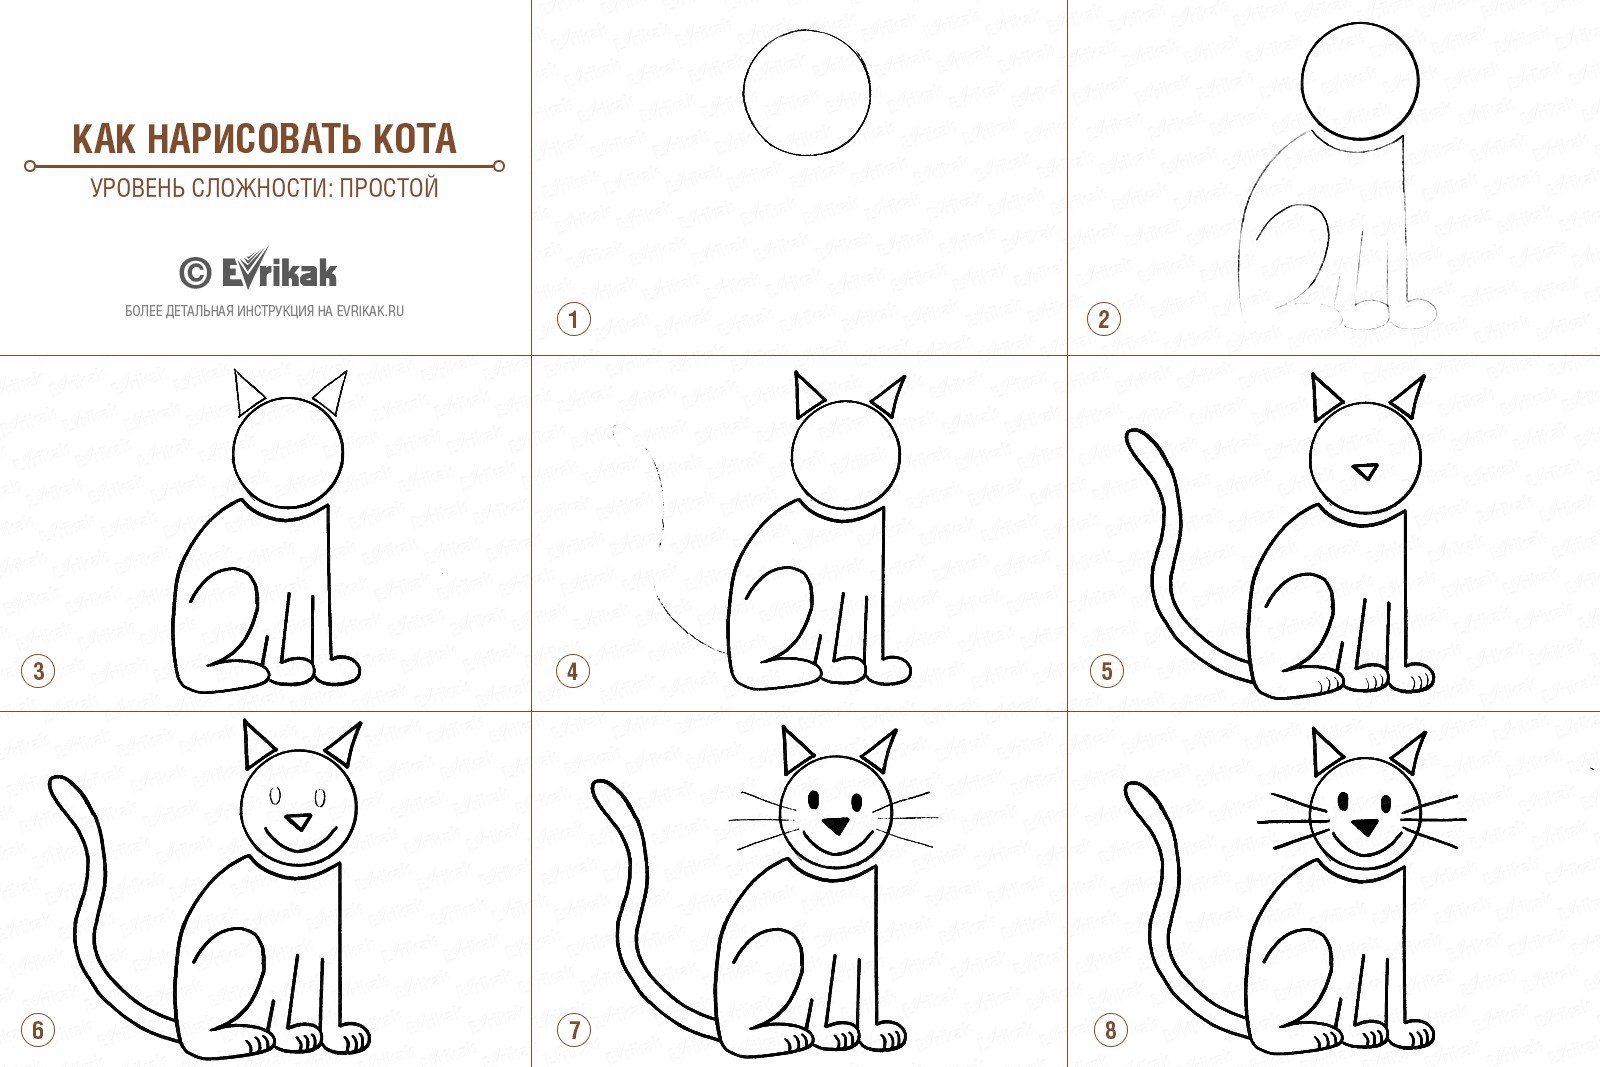 Можно легкий уровень. Пошаговое рисование для дошкольников. Схема рисования кошки для дошкольников. Простые схемы для рисования для детей. Схема рисунка кота для ребенка.